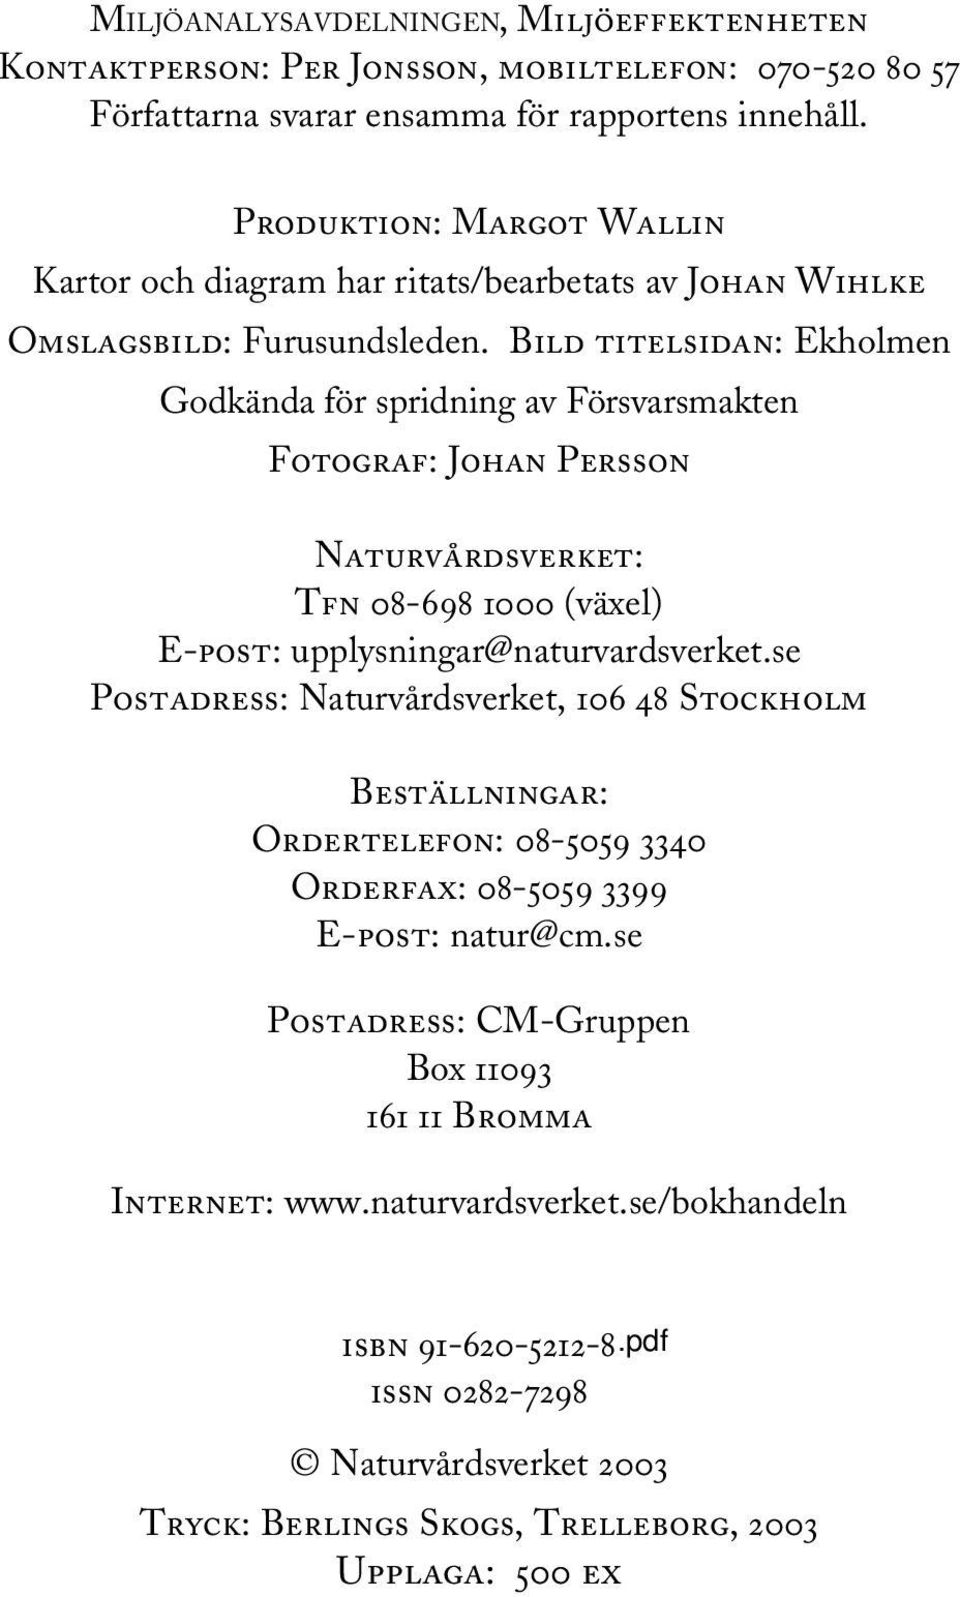 Bild titelsidan: Ekholmen Godkända för spridning av Försvarsmakten Fotograf: Johan Persson Naturvårdsverket: Tfn 08-698 1000 (växel) E-post: upplysningar@naturvardsverket.